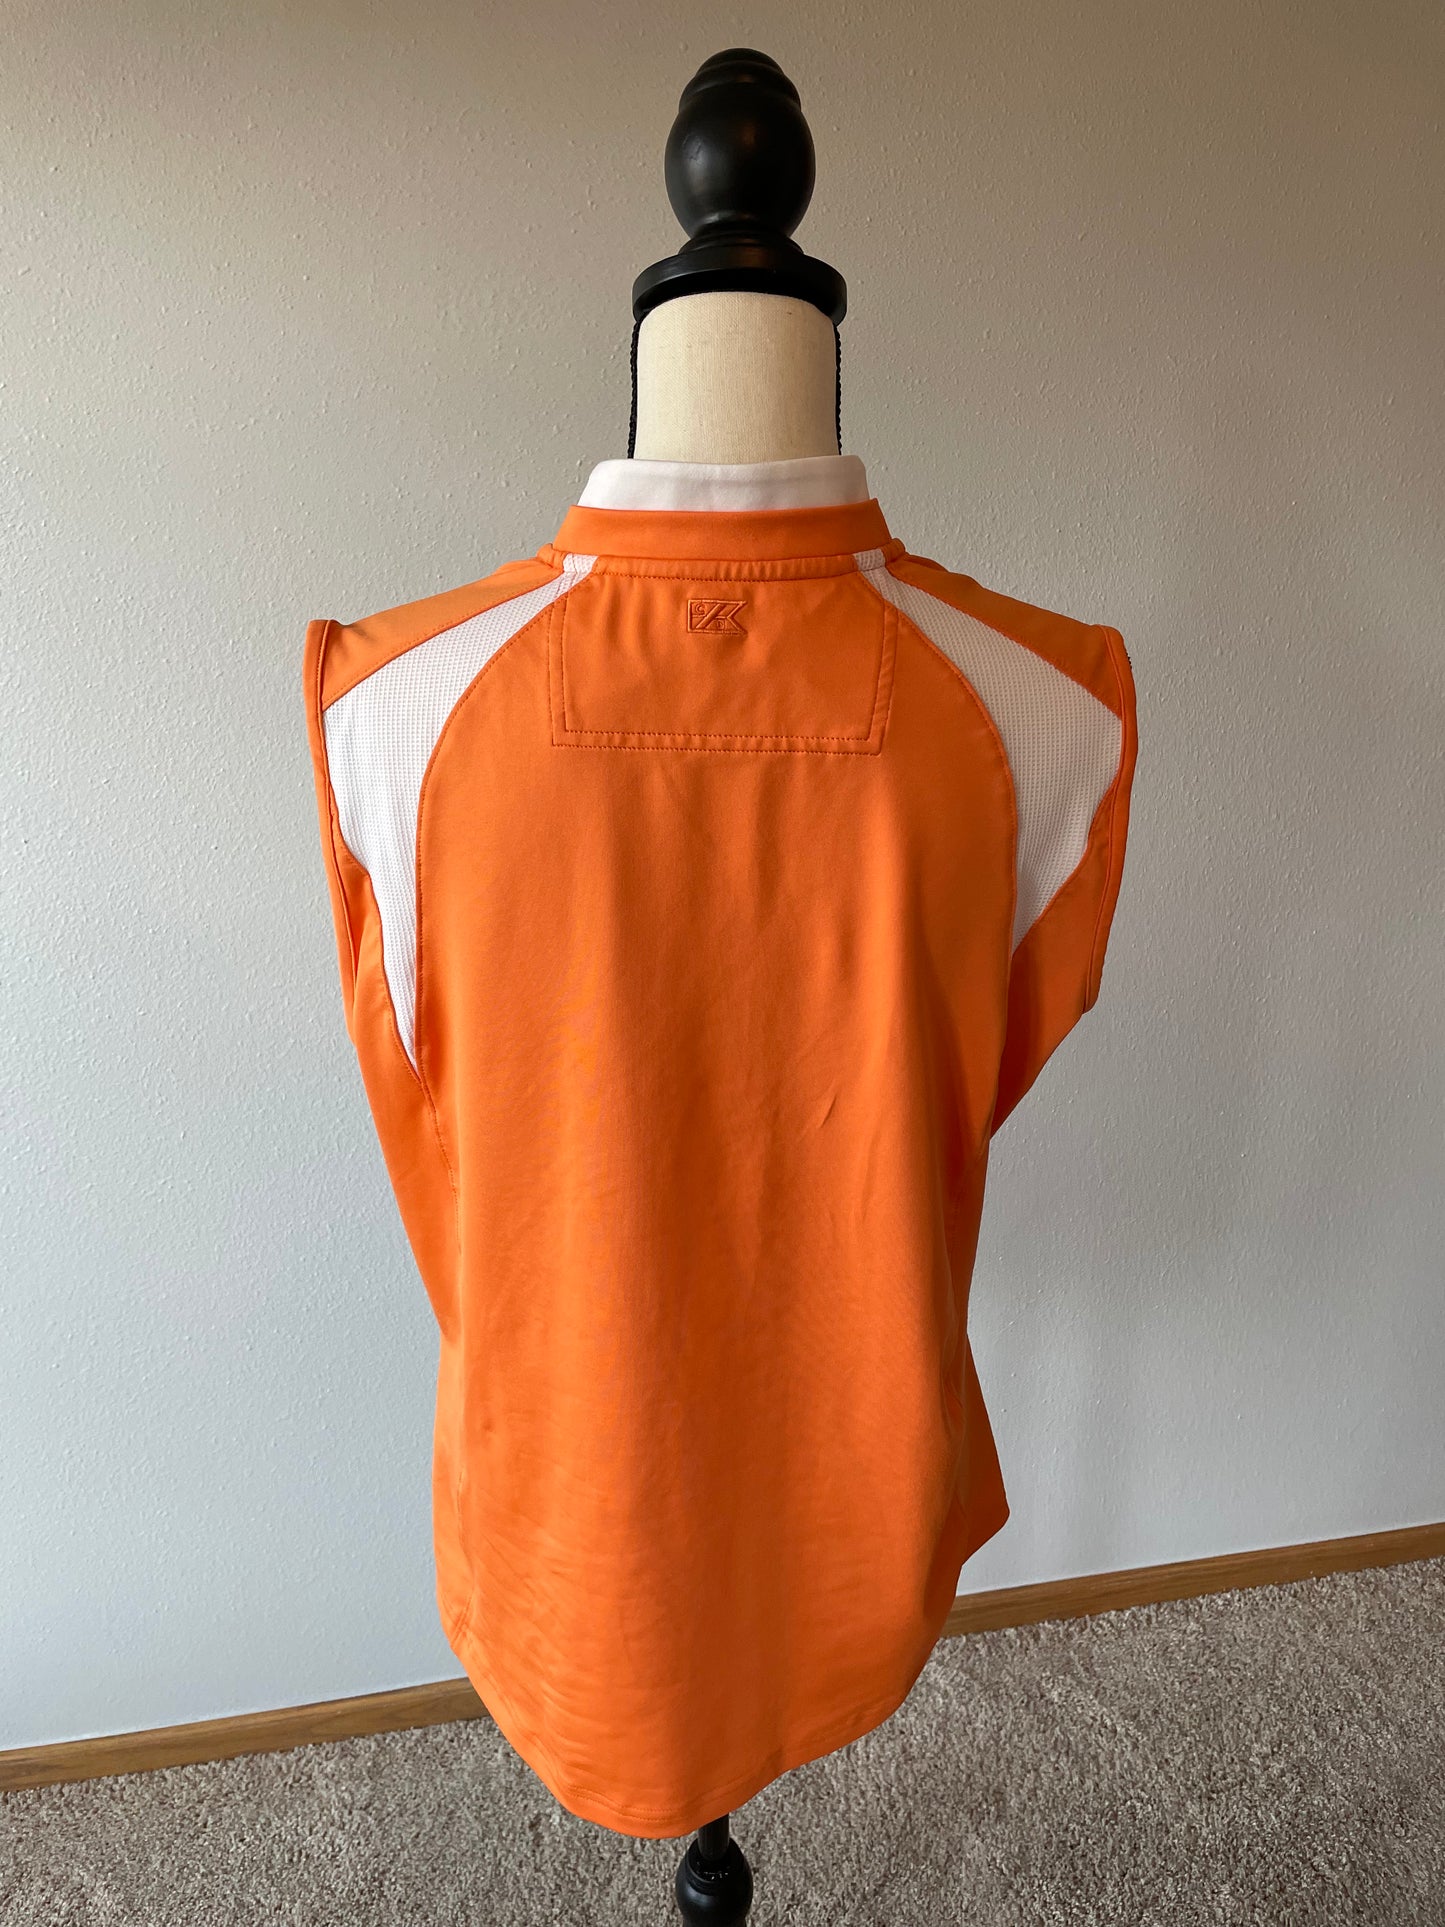 Cutter & Buck Sleeveless DryTec Shirt (XL)